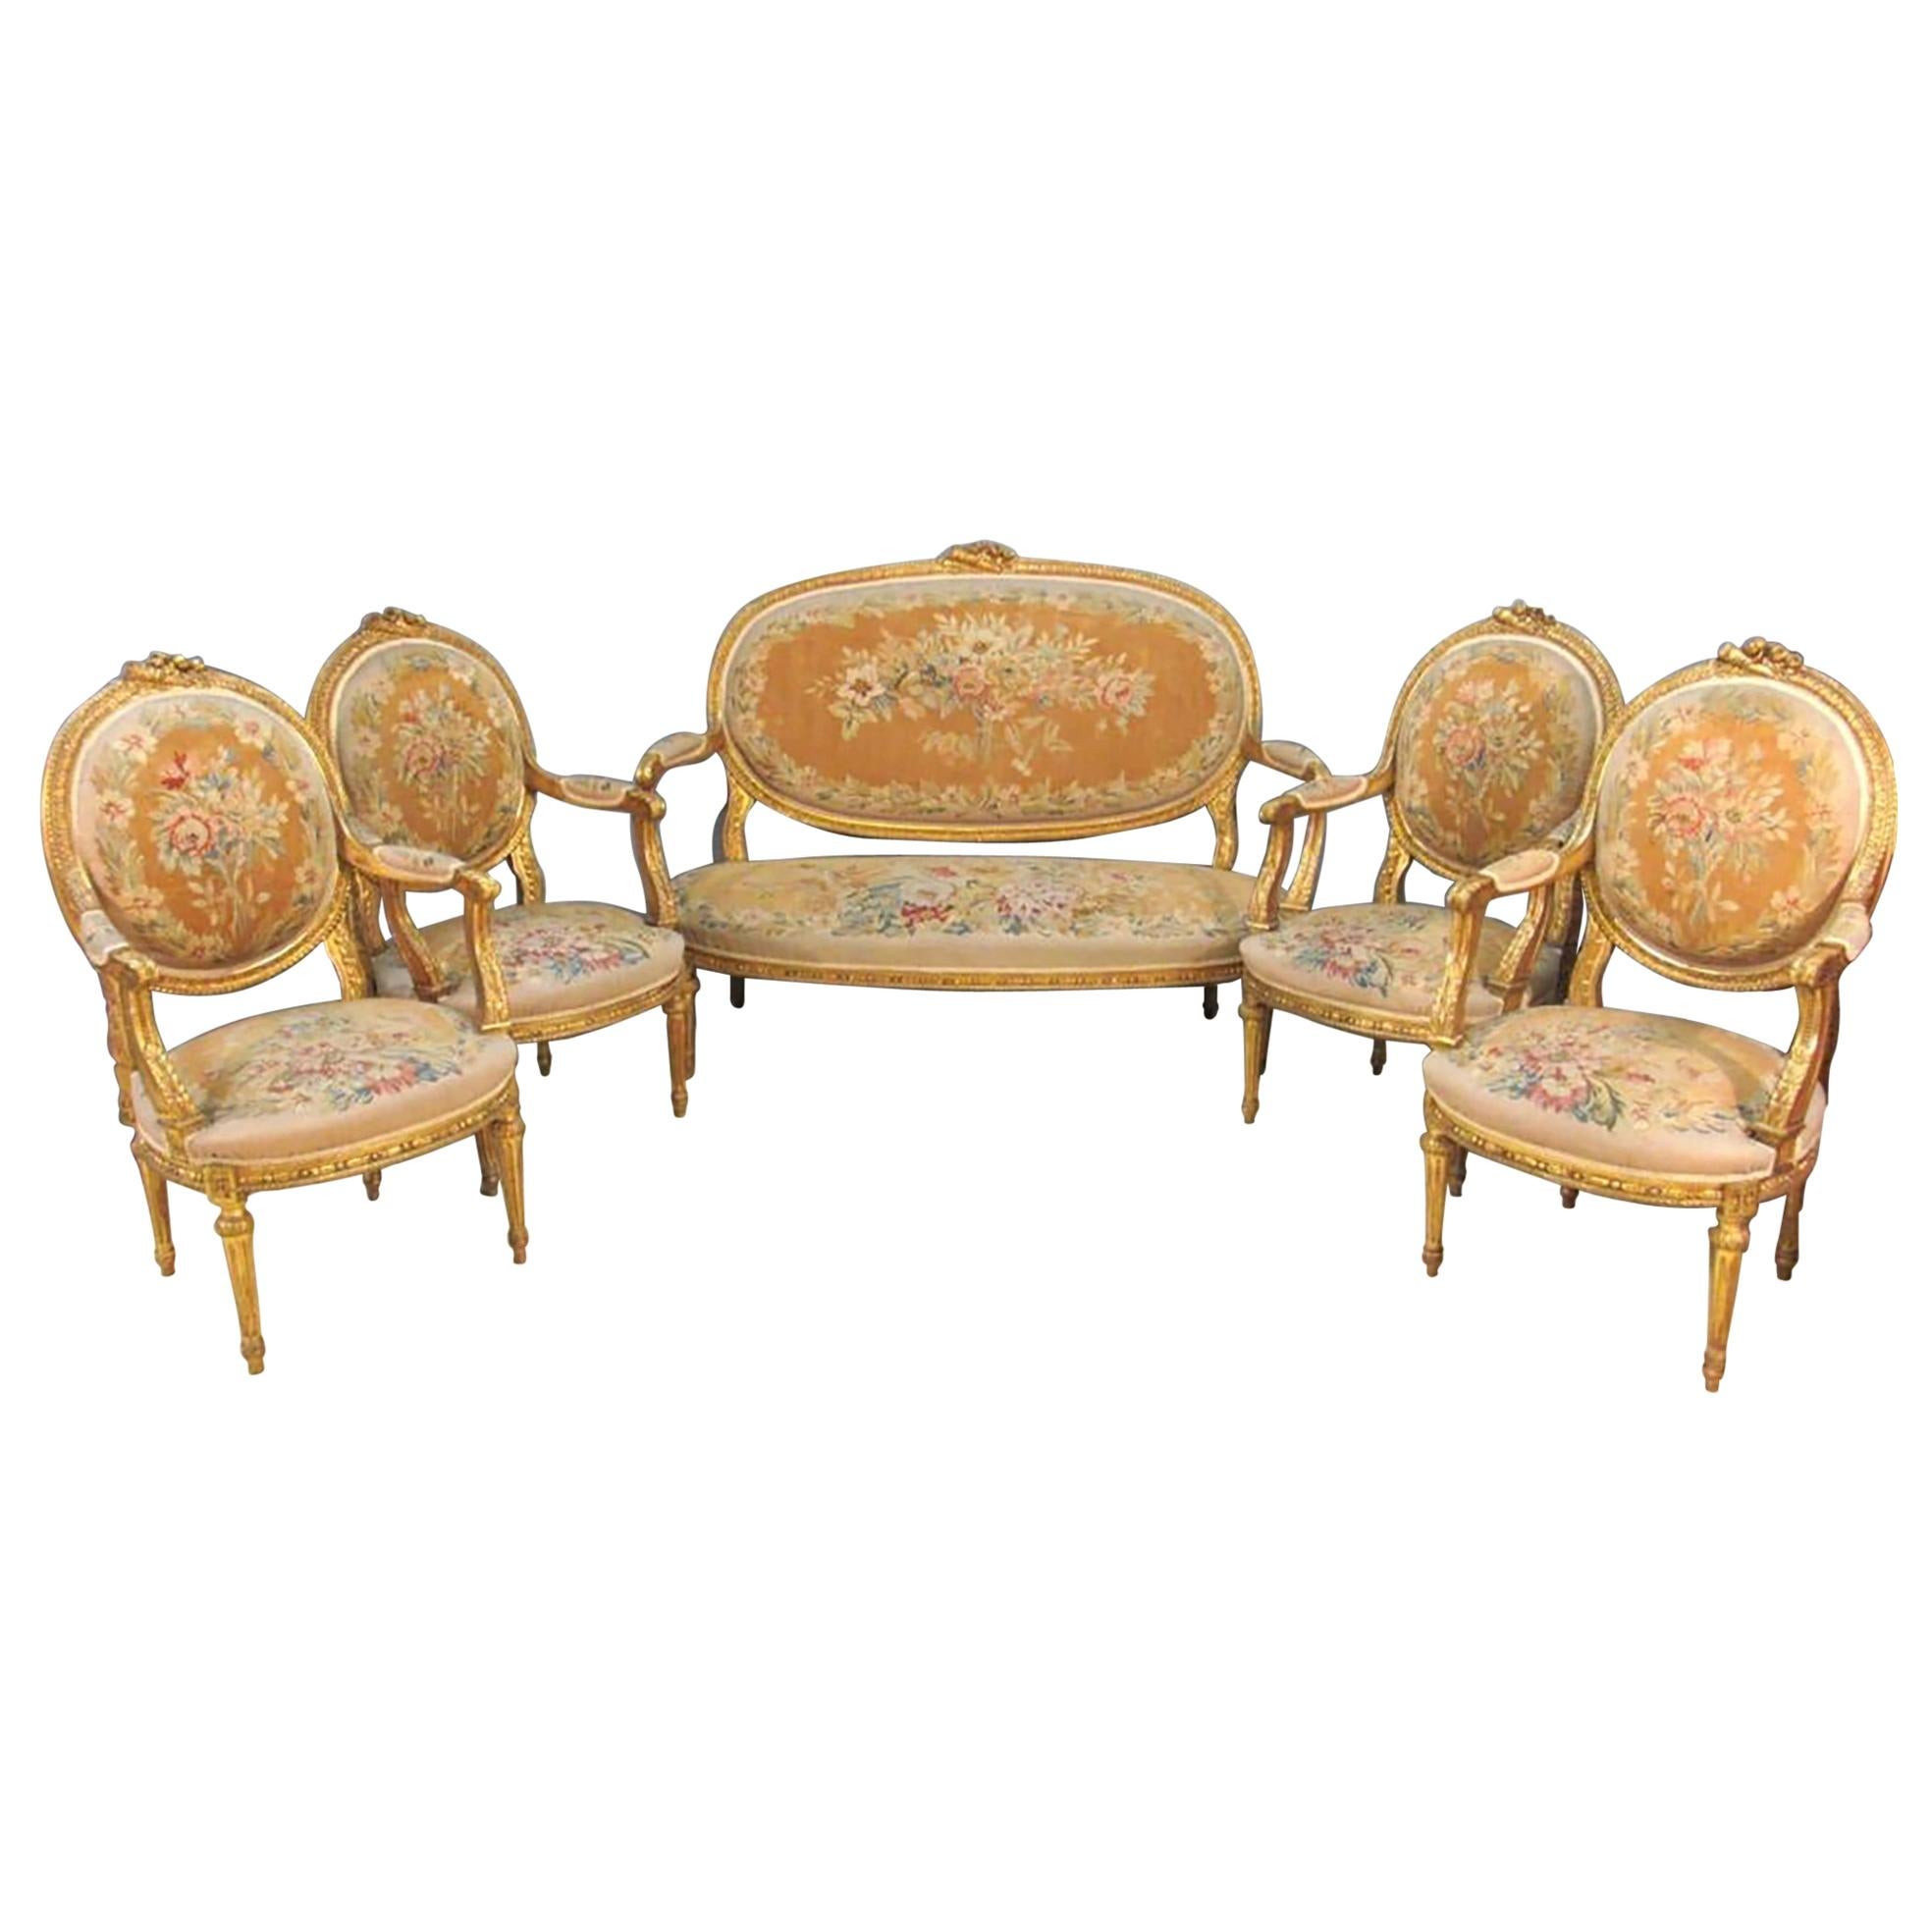 19th Century Louis XVI Style Aubusson Salon / Parlor Set, Settee Four Fauteuils